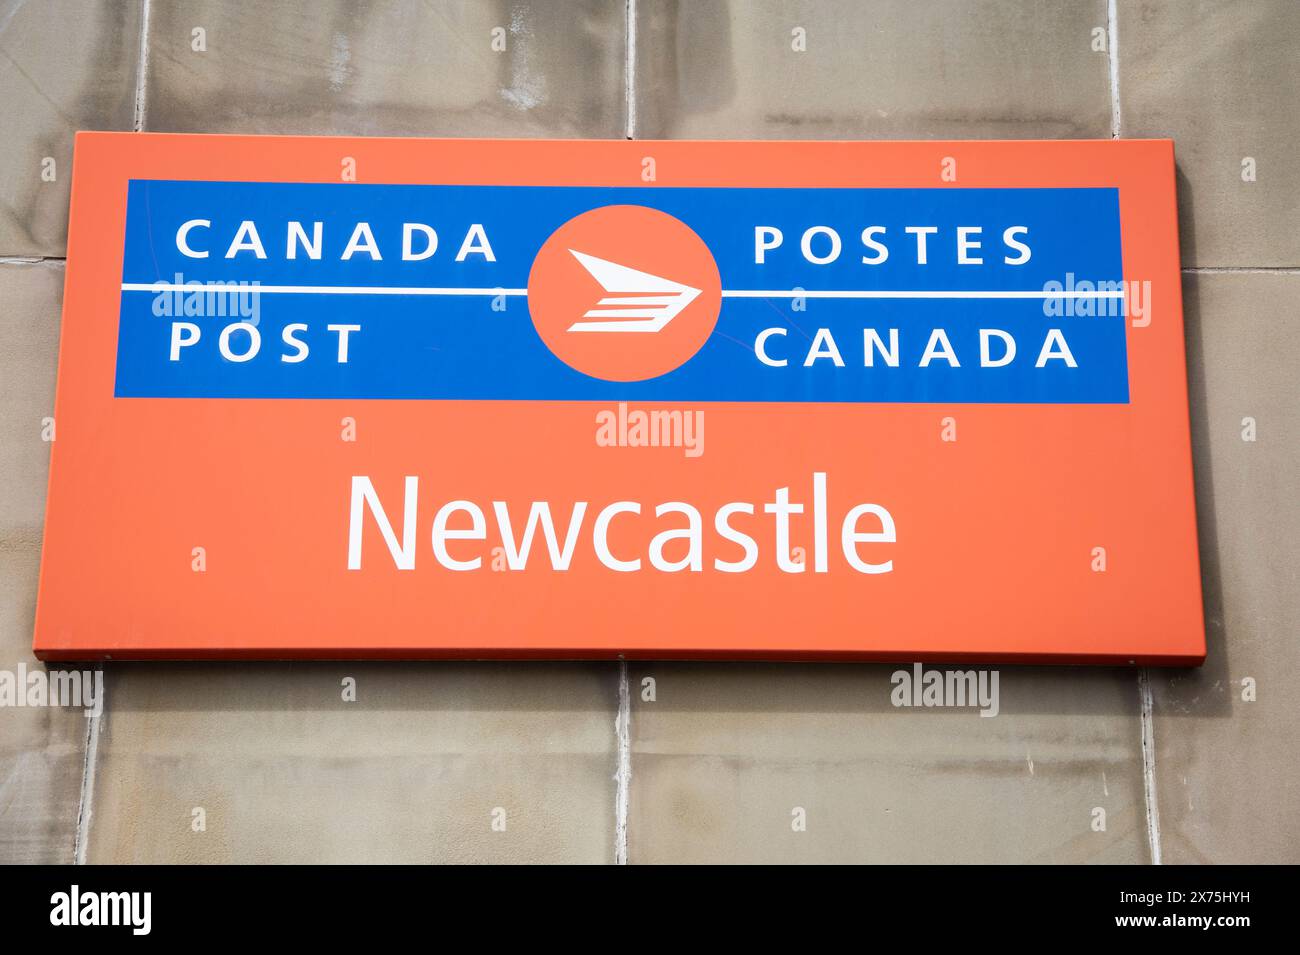 Newcastle post office sign in Miramichi, New Brunswick, Canada Stock Photo